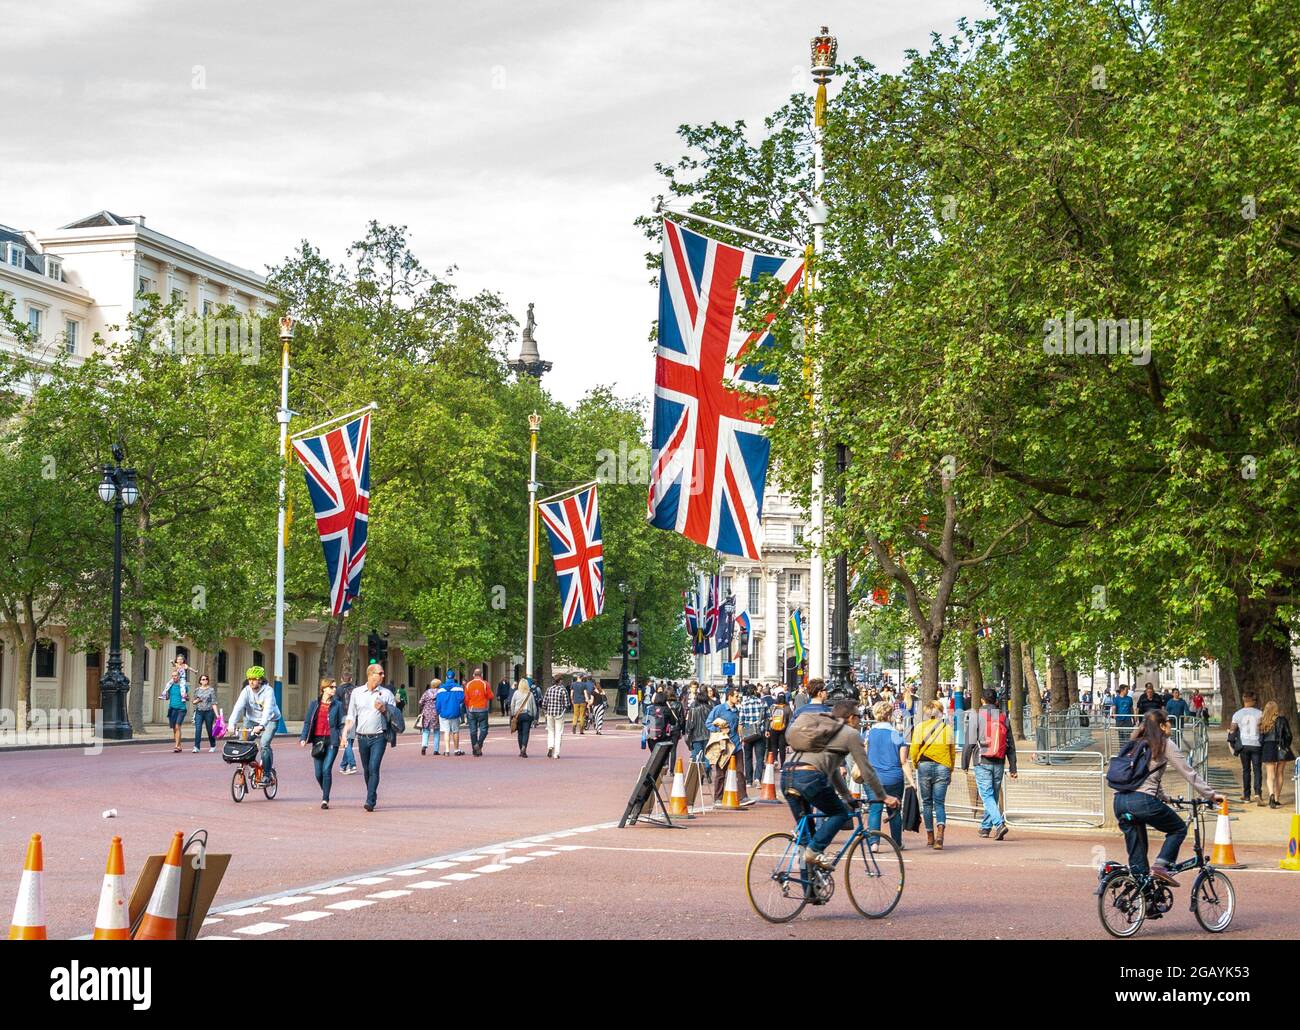 London - UK, 2015-05-10: Londen feiert den 70. Jahrestag des Endes des Zweiten Weltkriegs in Europa am VEday, dem Gedenken an den Tag des Sieges in Europa. Die Menschen schlendern und radeln die Mall entlang, eine von Bäumen gesäumte königliche Straße, die vom Trafalgar Square zum Buckingham Palace führt und auf beiden Seiten mit britischen Flaggen geschmückt ist. Hier mit Blick auf den Trafalgar Square. Im Hintergrund erhebt sich die Statue von Admiral Horatio Nelson auf der Nelson-Säule knapp über den Bäumen. Foto archivieren. Stockfoto